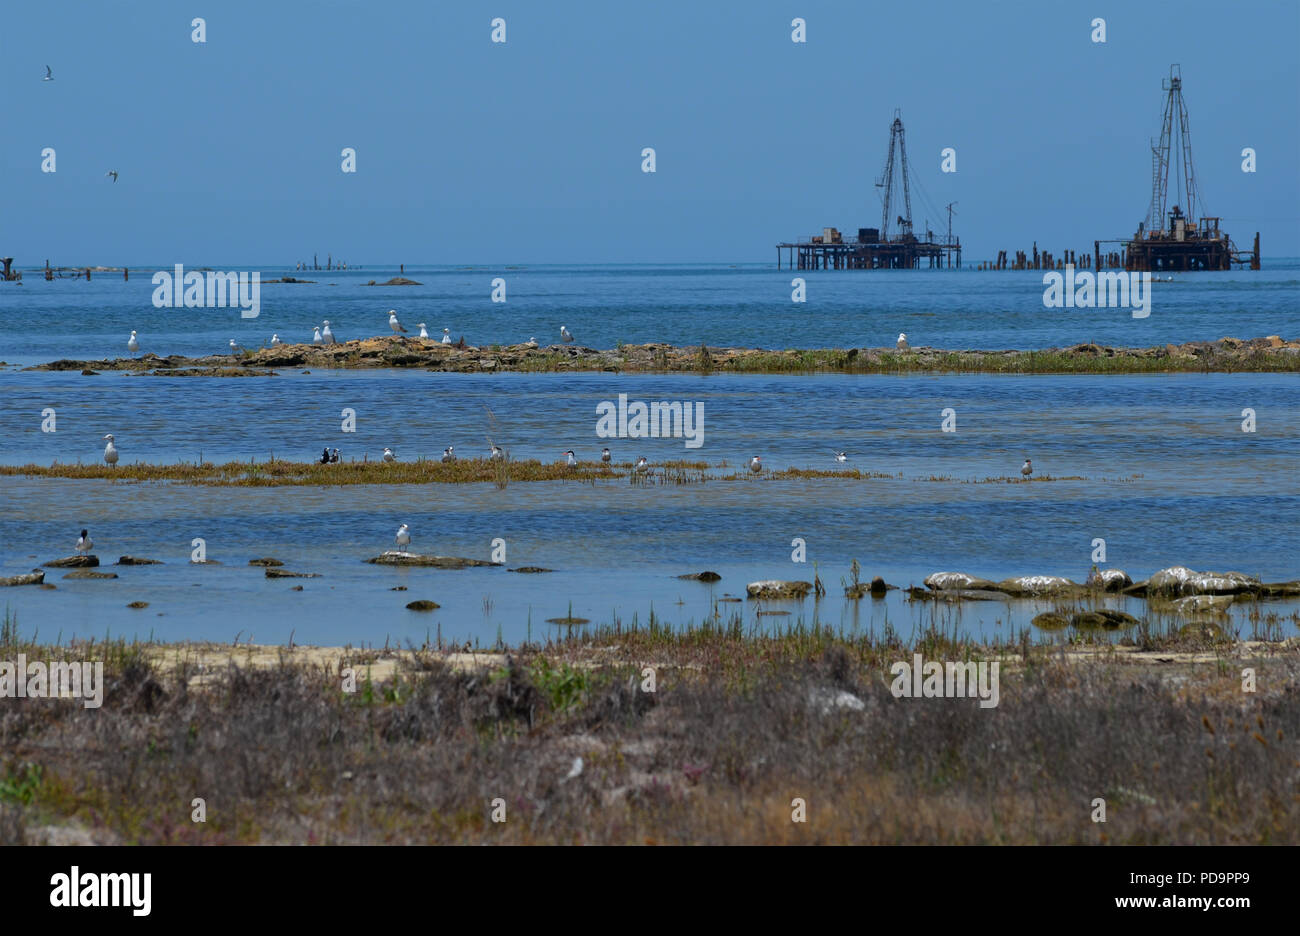 Caspian Sea pollution. Oil rigs close to the shore in Artyom island, Azerbaijan Stock Photo